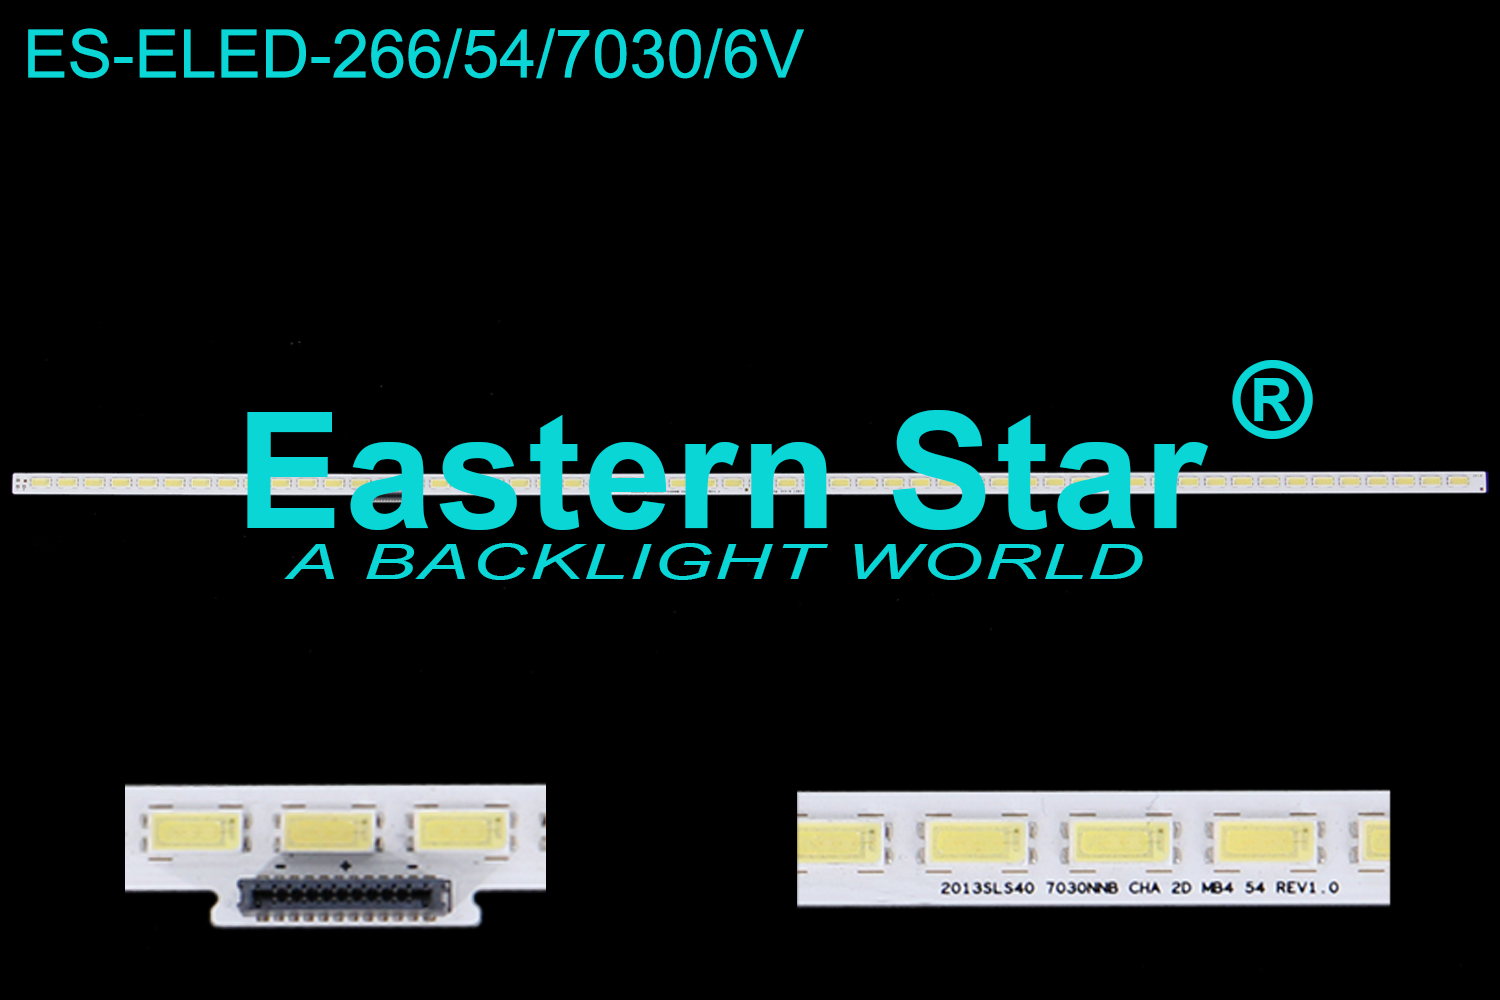 ES-ELED-266 ELED/EDGE TV backlight 40'' 54LEDs use for Samsung Philip 40PFL4508 SAMSUNG 2013SLS40 7030NNB CHA 2D MB4 54 REV1.0 LED STRIPS(1)